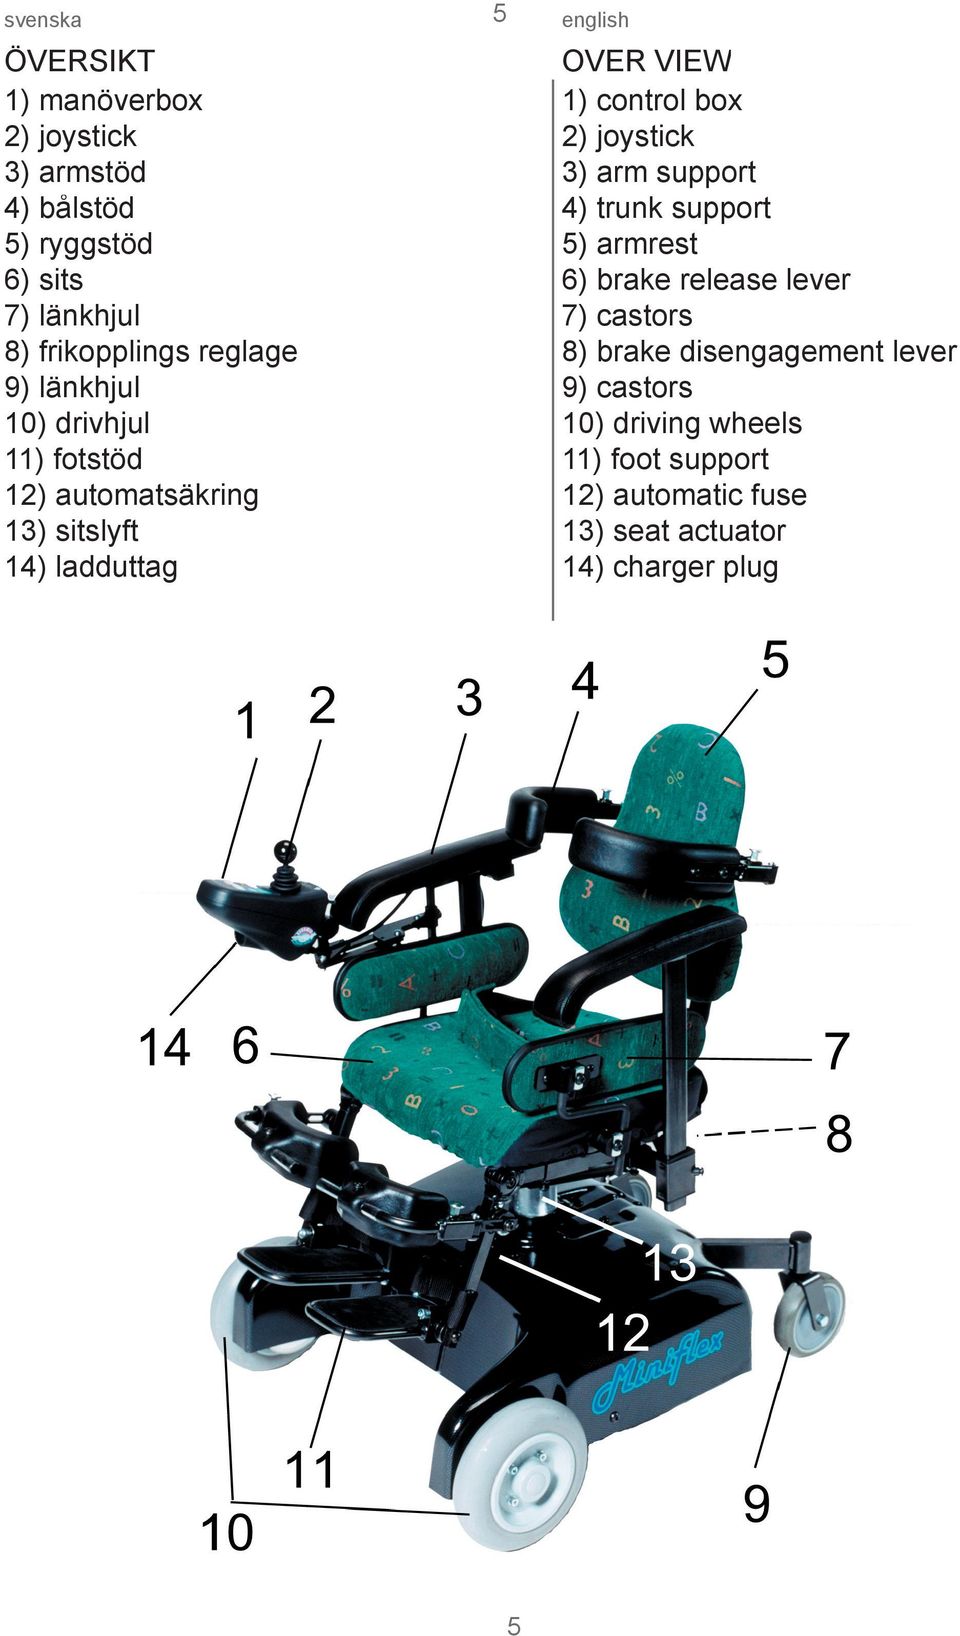 control box 2) joystick 3) arm support 4) trunk support 5) armrest 6) brake release lever 7) castors 8) brake